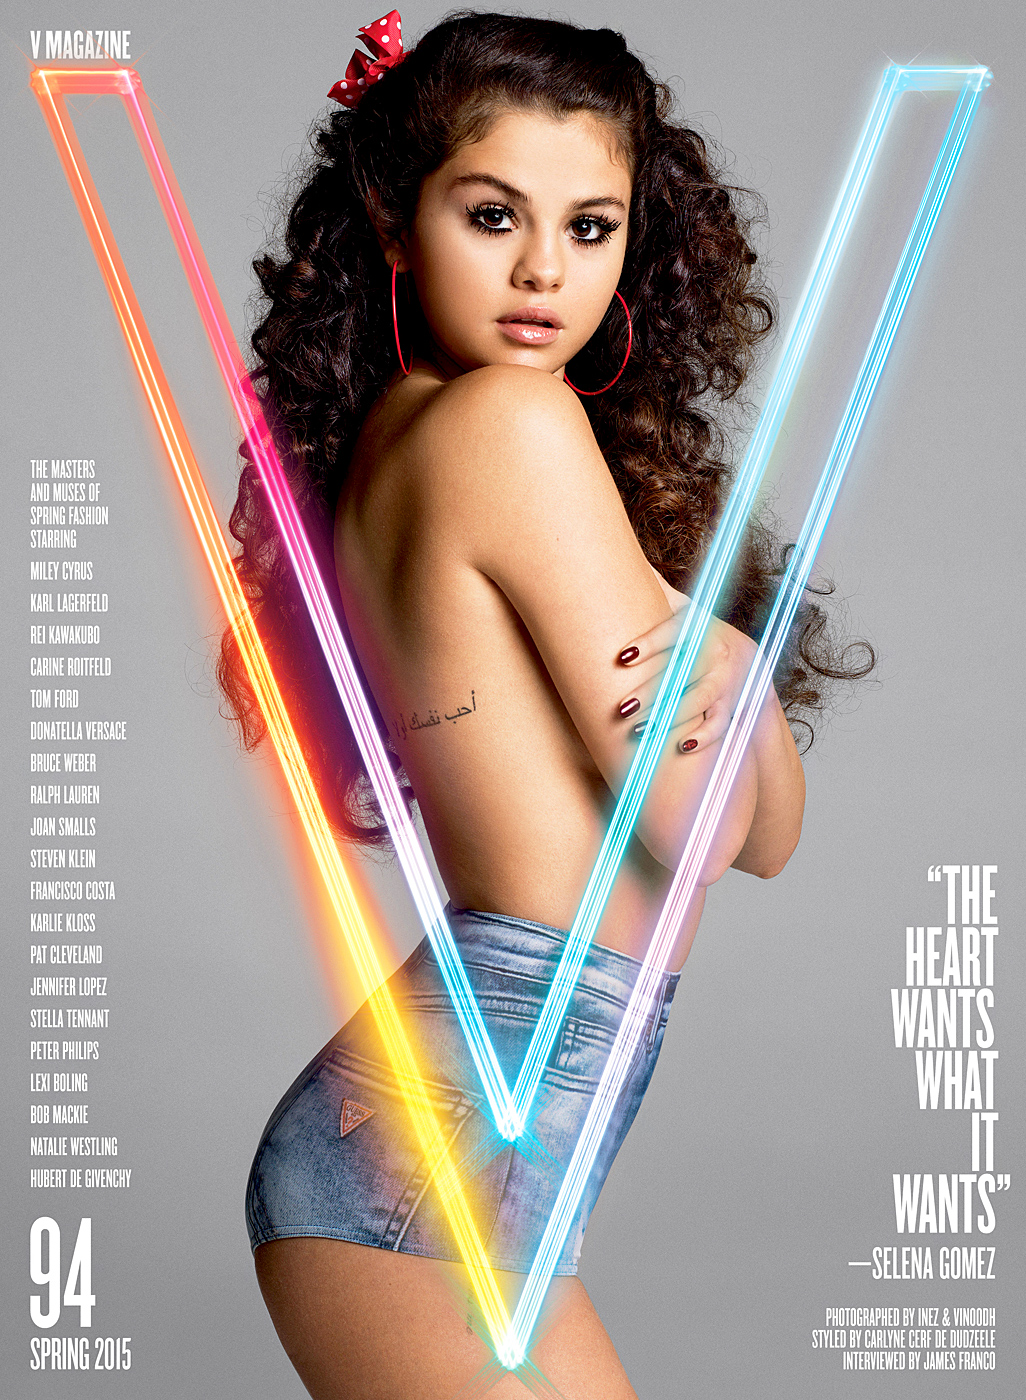 daniel lockman recommends Selena Gomez Nude Cover